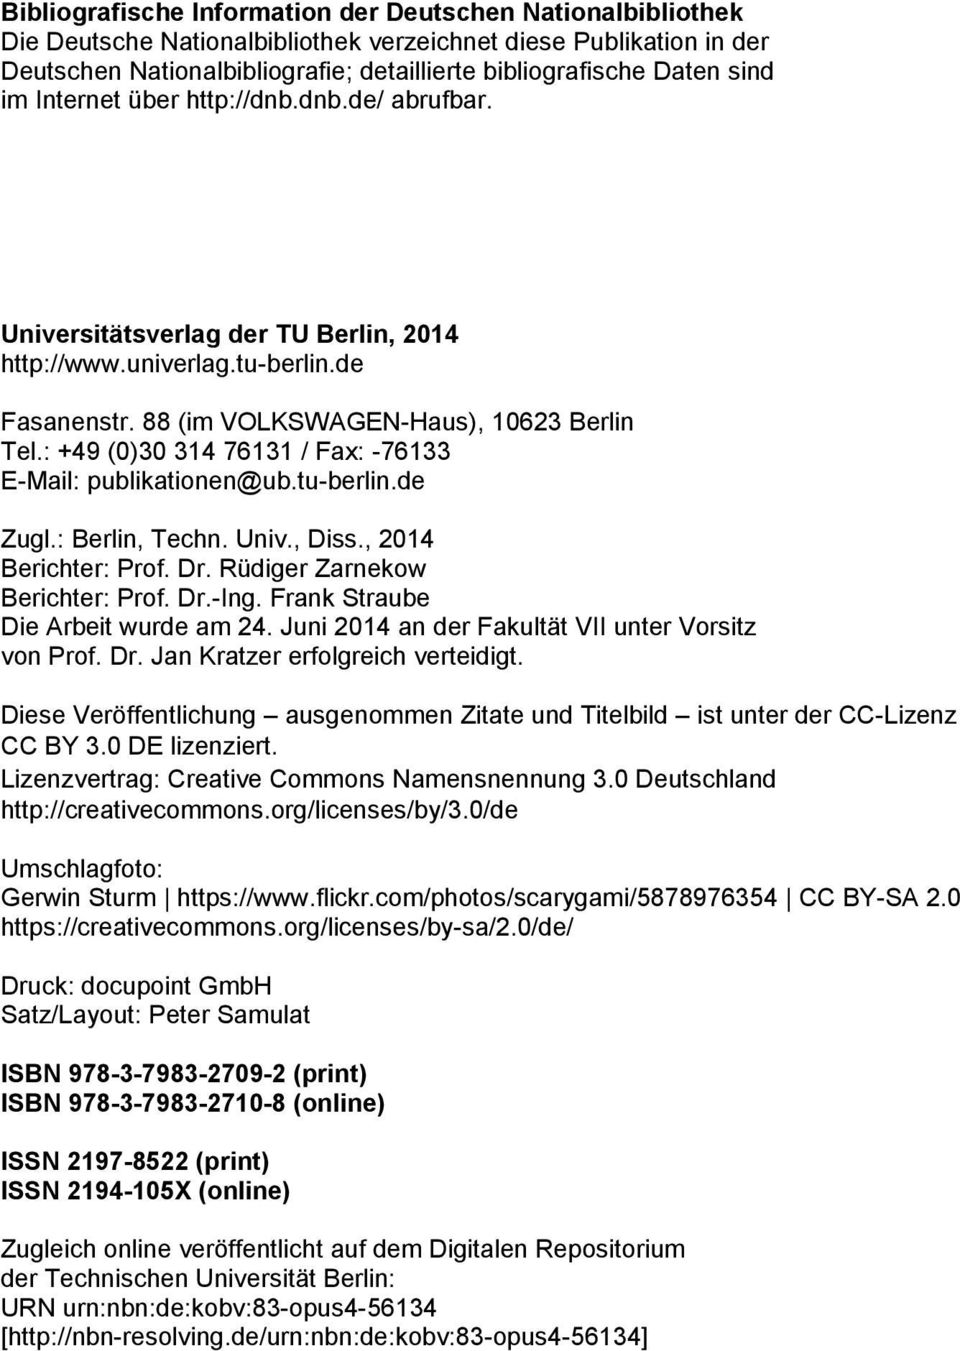 : +49 (0)30 314 76131 / Fax: -76133 E-Mail: publikationen@ub.tu-berlin.de Zugl.: Berlin, Techn. Univ., Diss., 2014 Berichter: Prof. Dr. Rüdiger Zarnekow Berichter: Prof. Dr.-Ing.